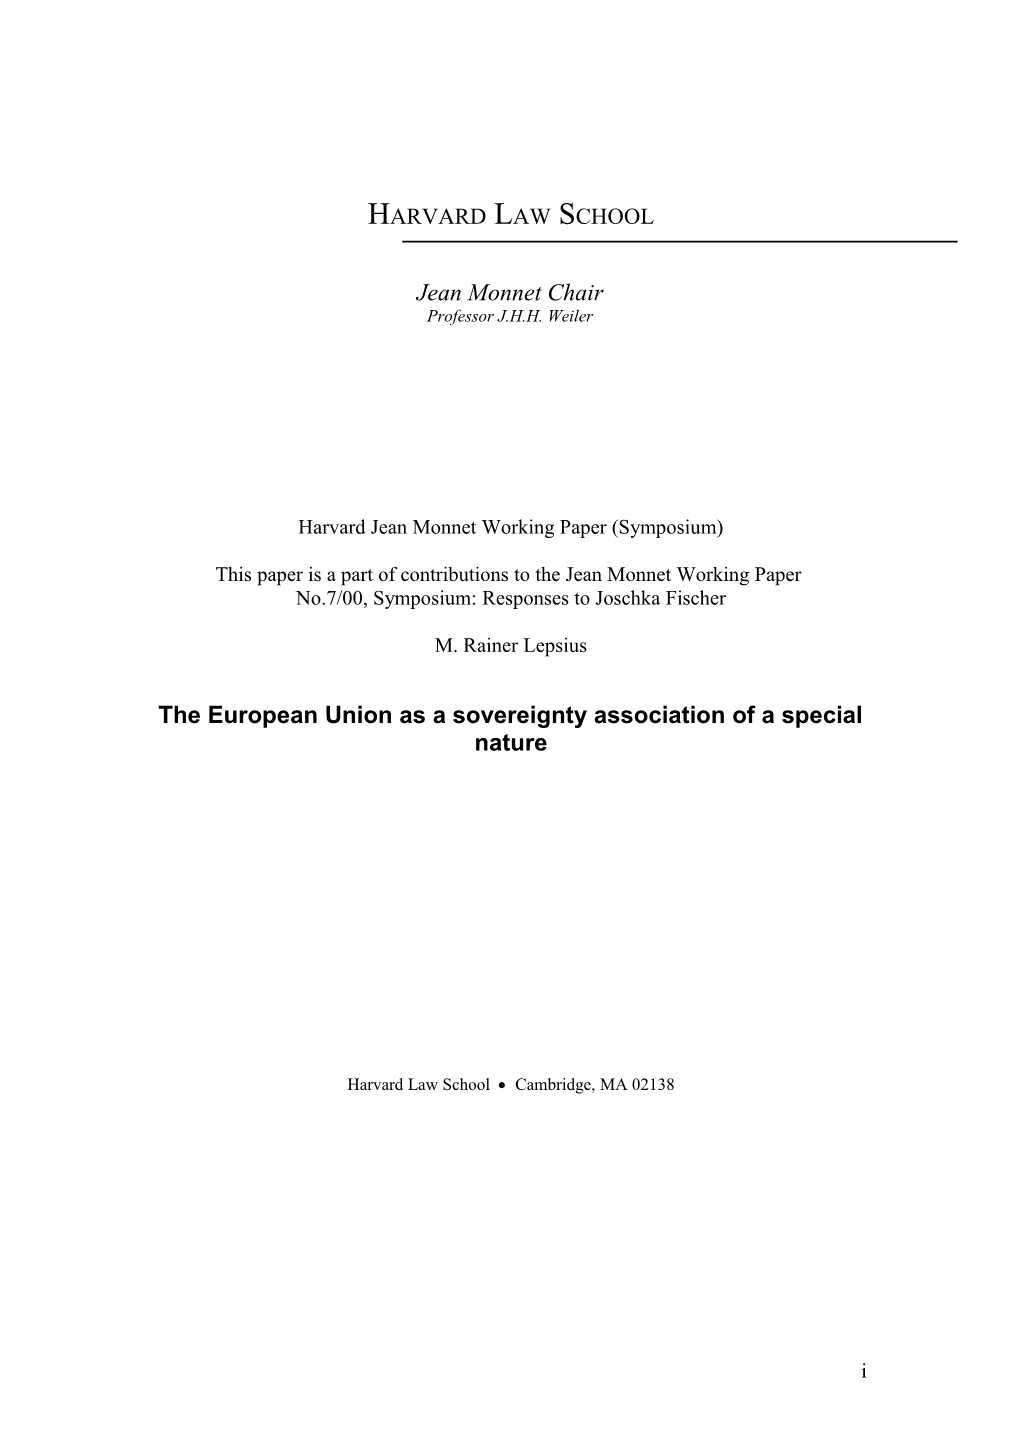 Die Europäische Union Als Herrschaftsverband Eigener Prägung